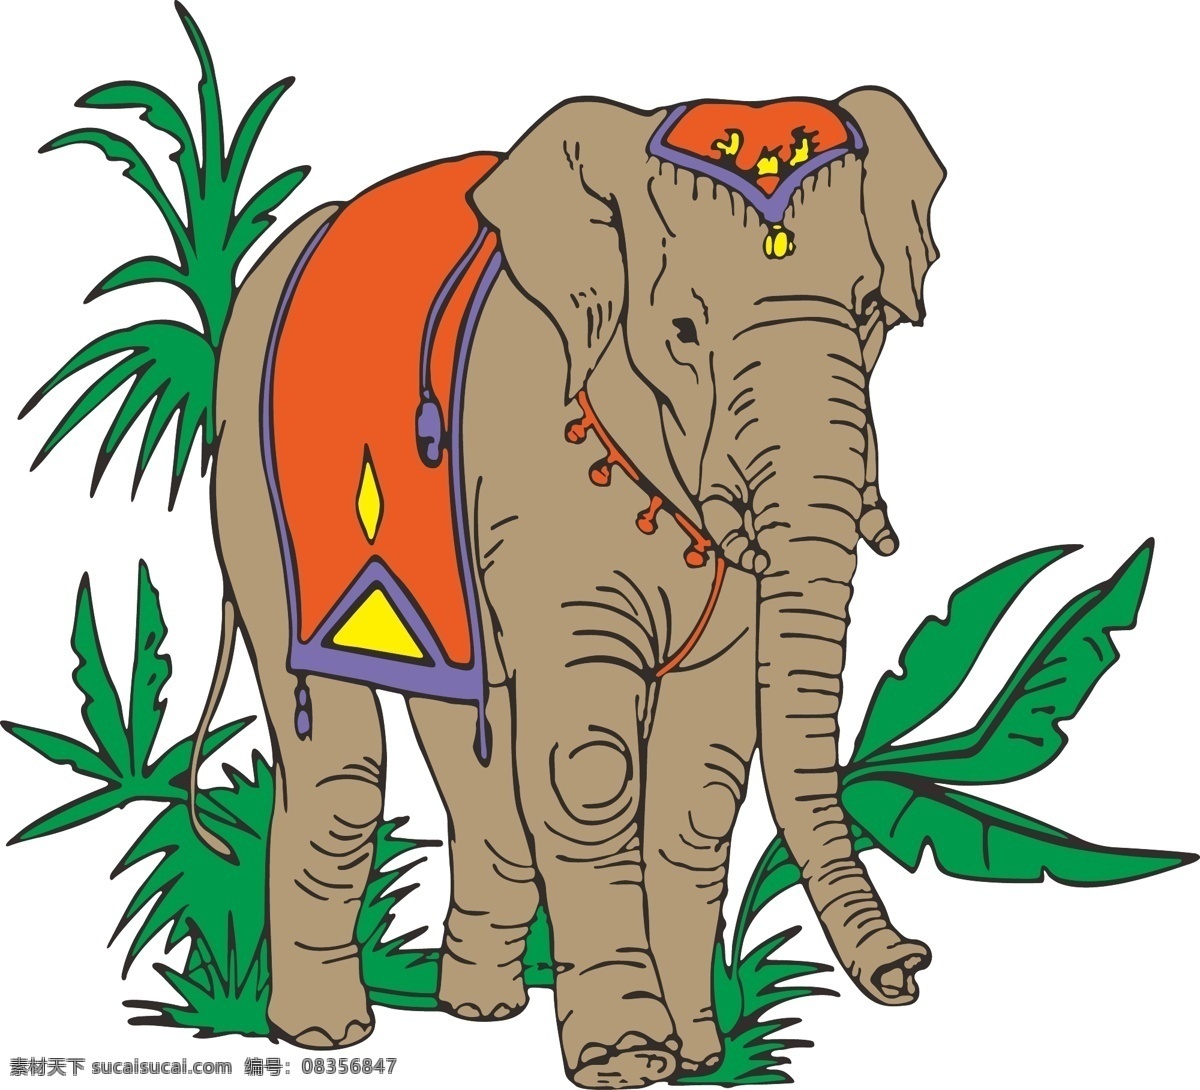 大象 动物 生物世界 矢量图 椰子树 野生动物 印花图 矢量 模板下载 椰子树大象 大型动物 t恤印花图 个性印花图案 淘宝素材 其他淘宝素材